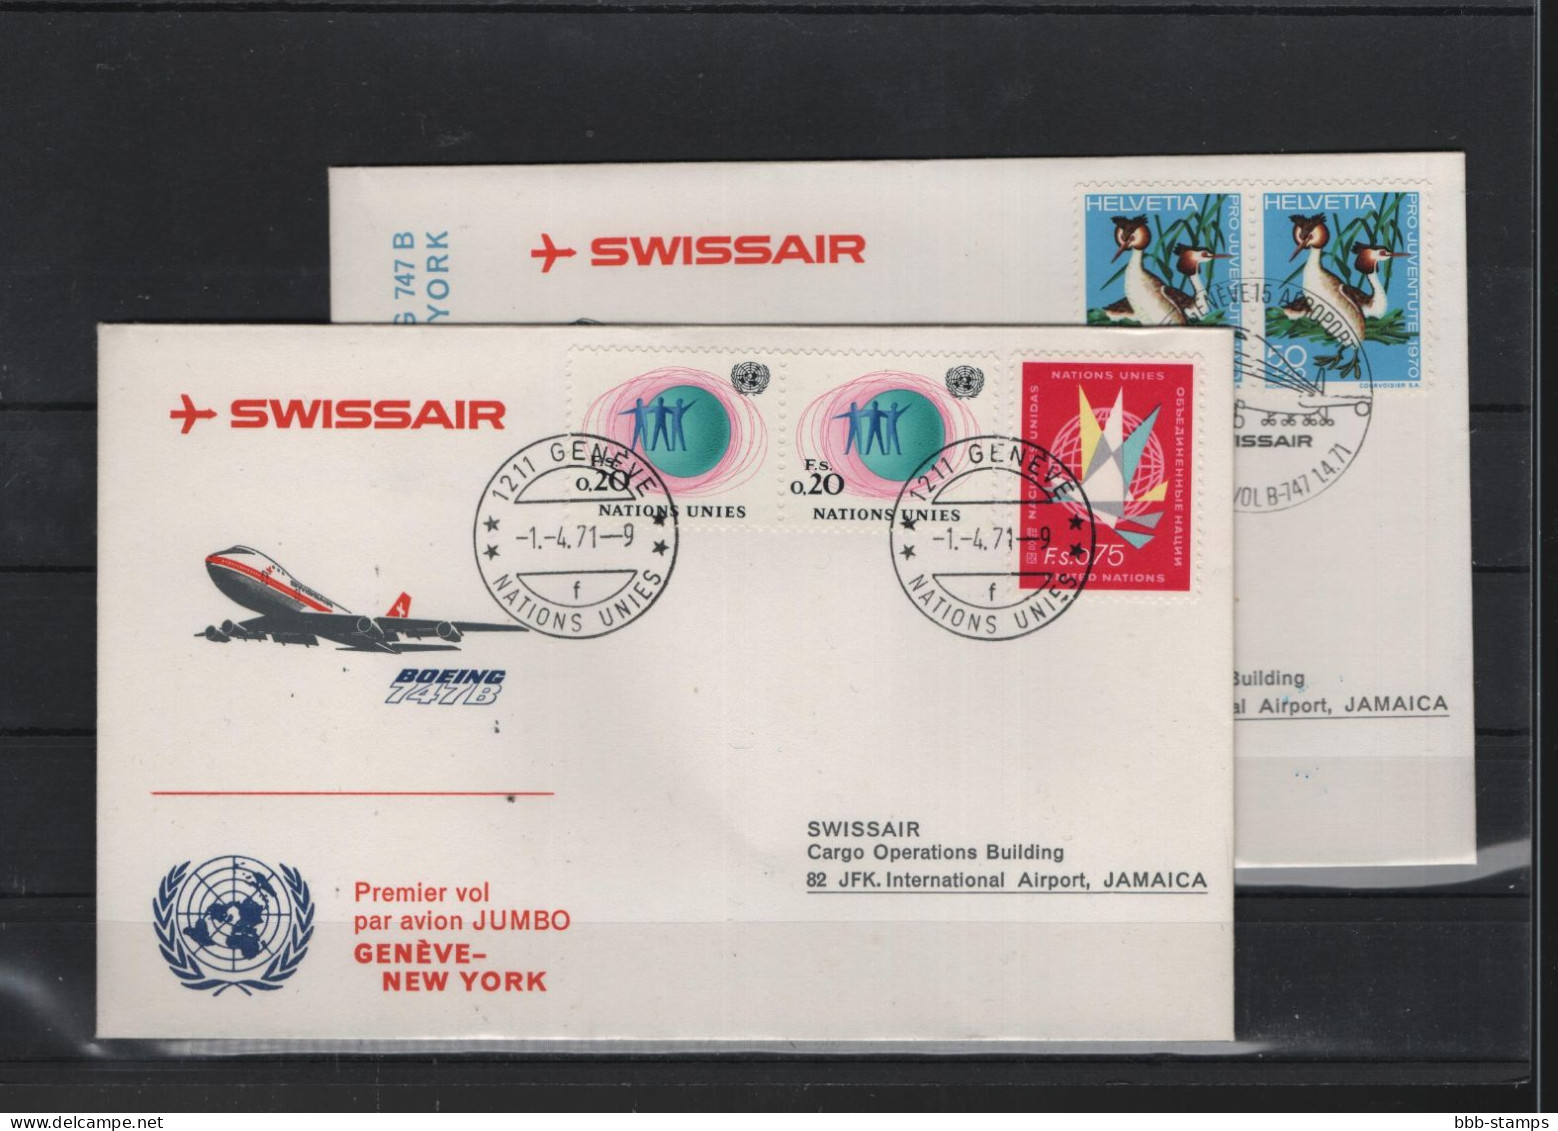 Schweiz Luftpost FFC Swissair 1.4.1971 Genf - New York VV - Erst- U. Sonderflugbriefe